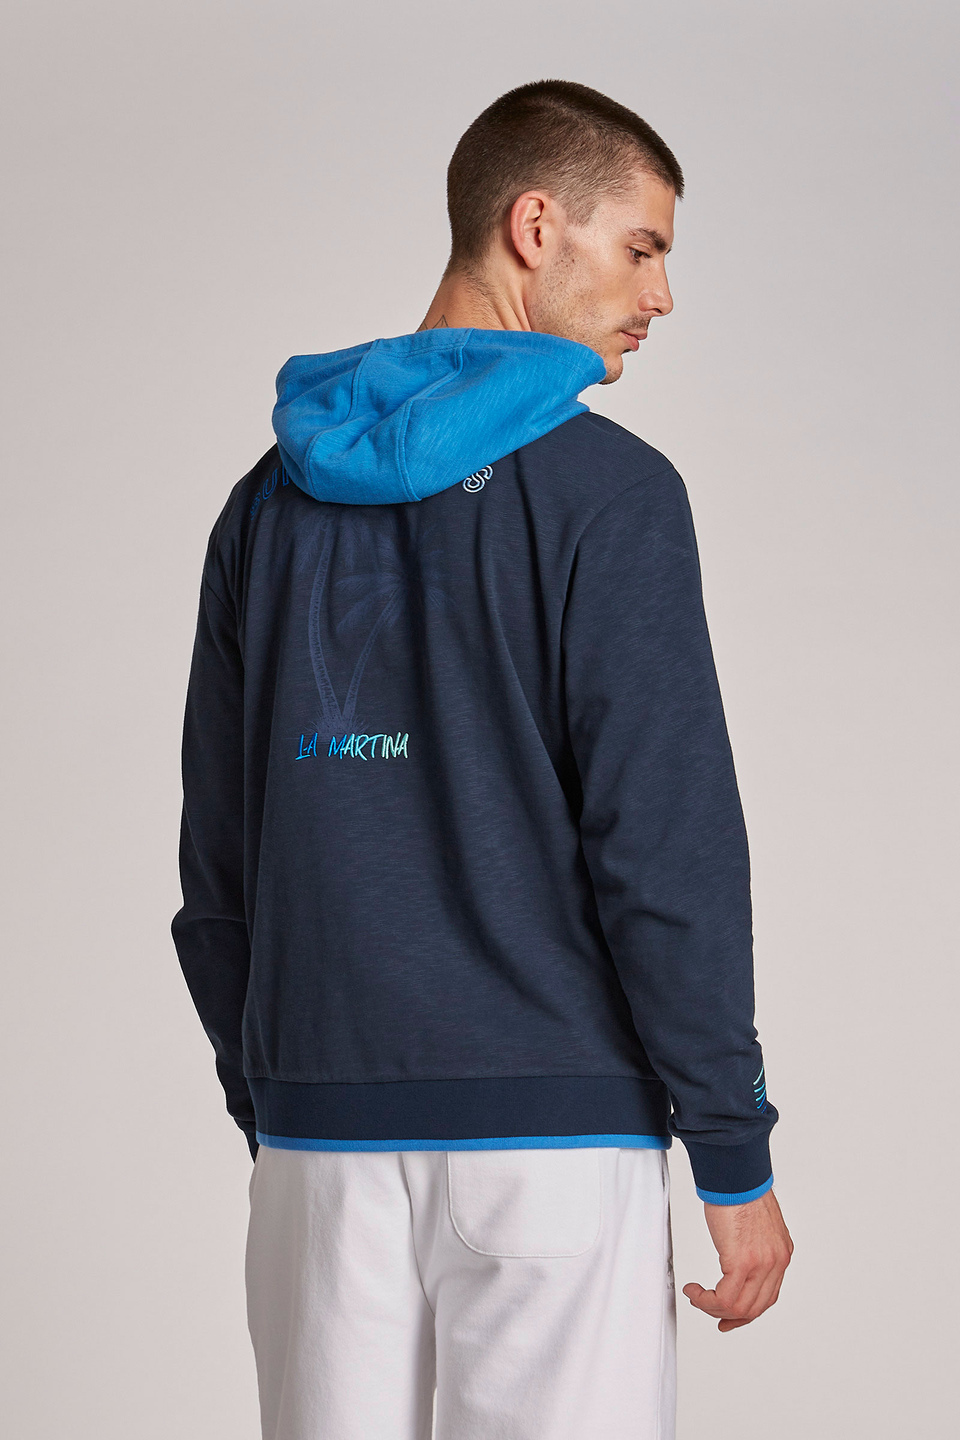 Sweat-shirt homme 100% coton, à capuche et coupe classique - La Martina - Official Online Shop